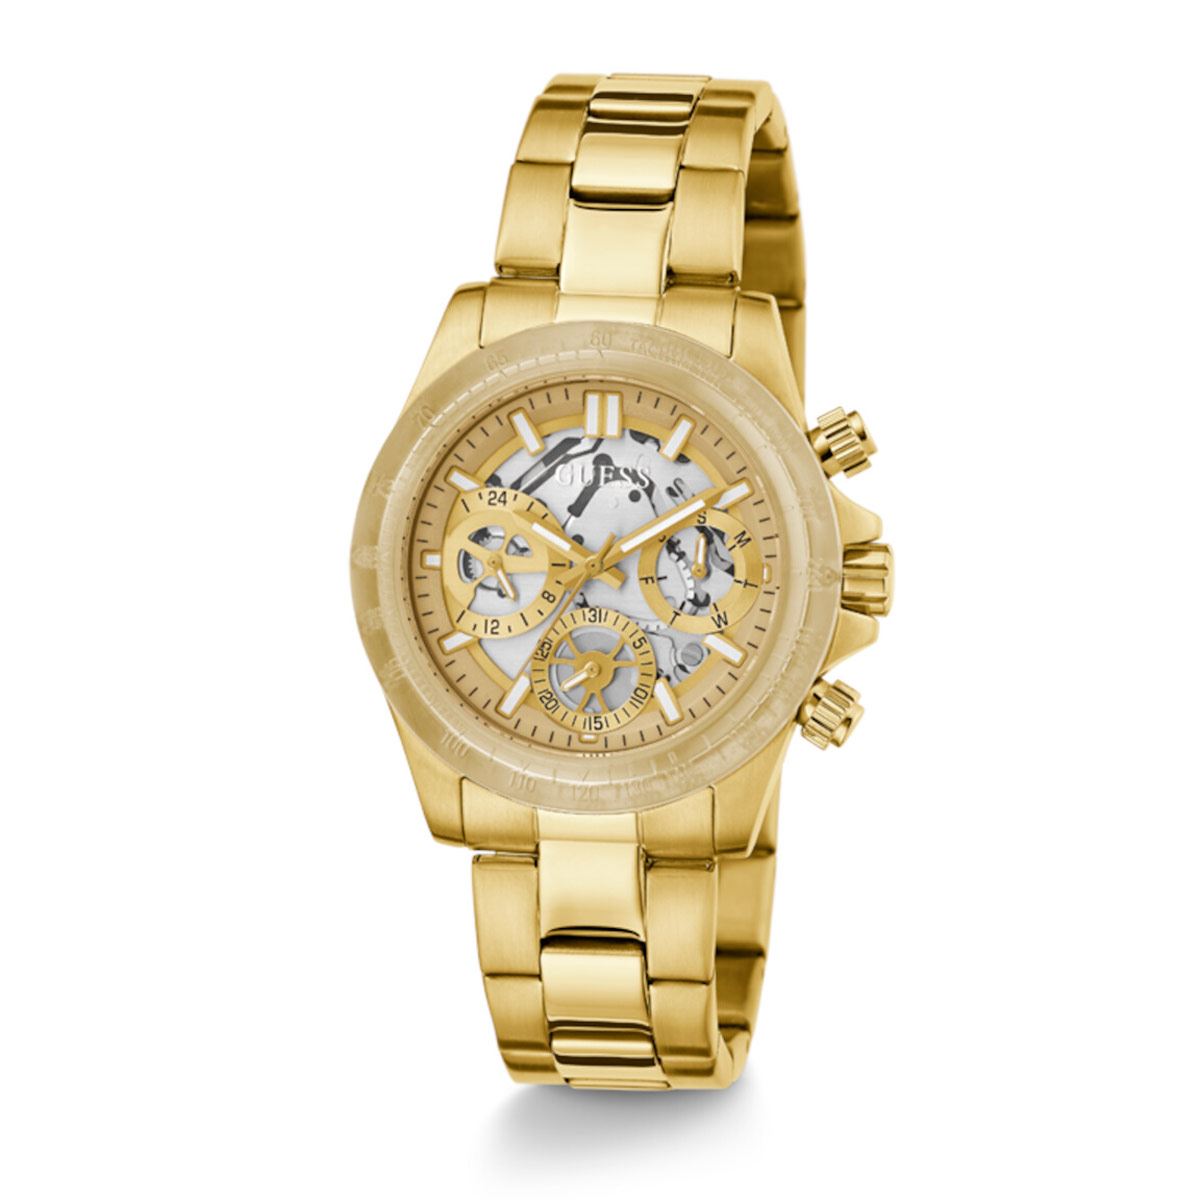 Reloj Guess Mujer QUEEN GW0536L3 Acero Inoxidable dorado multifunción